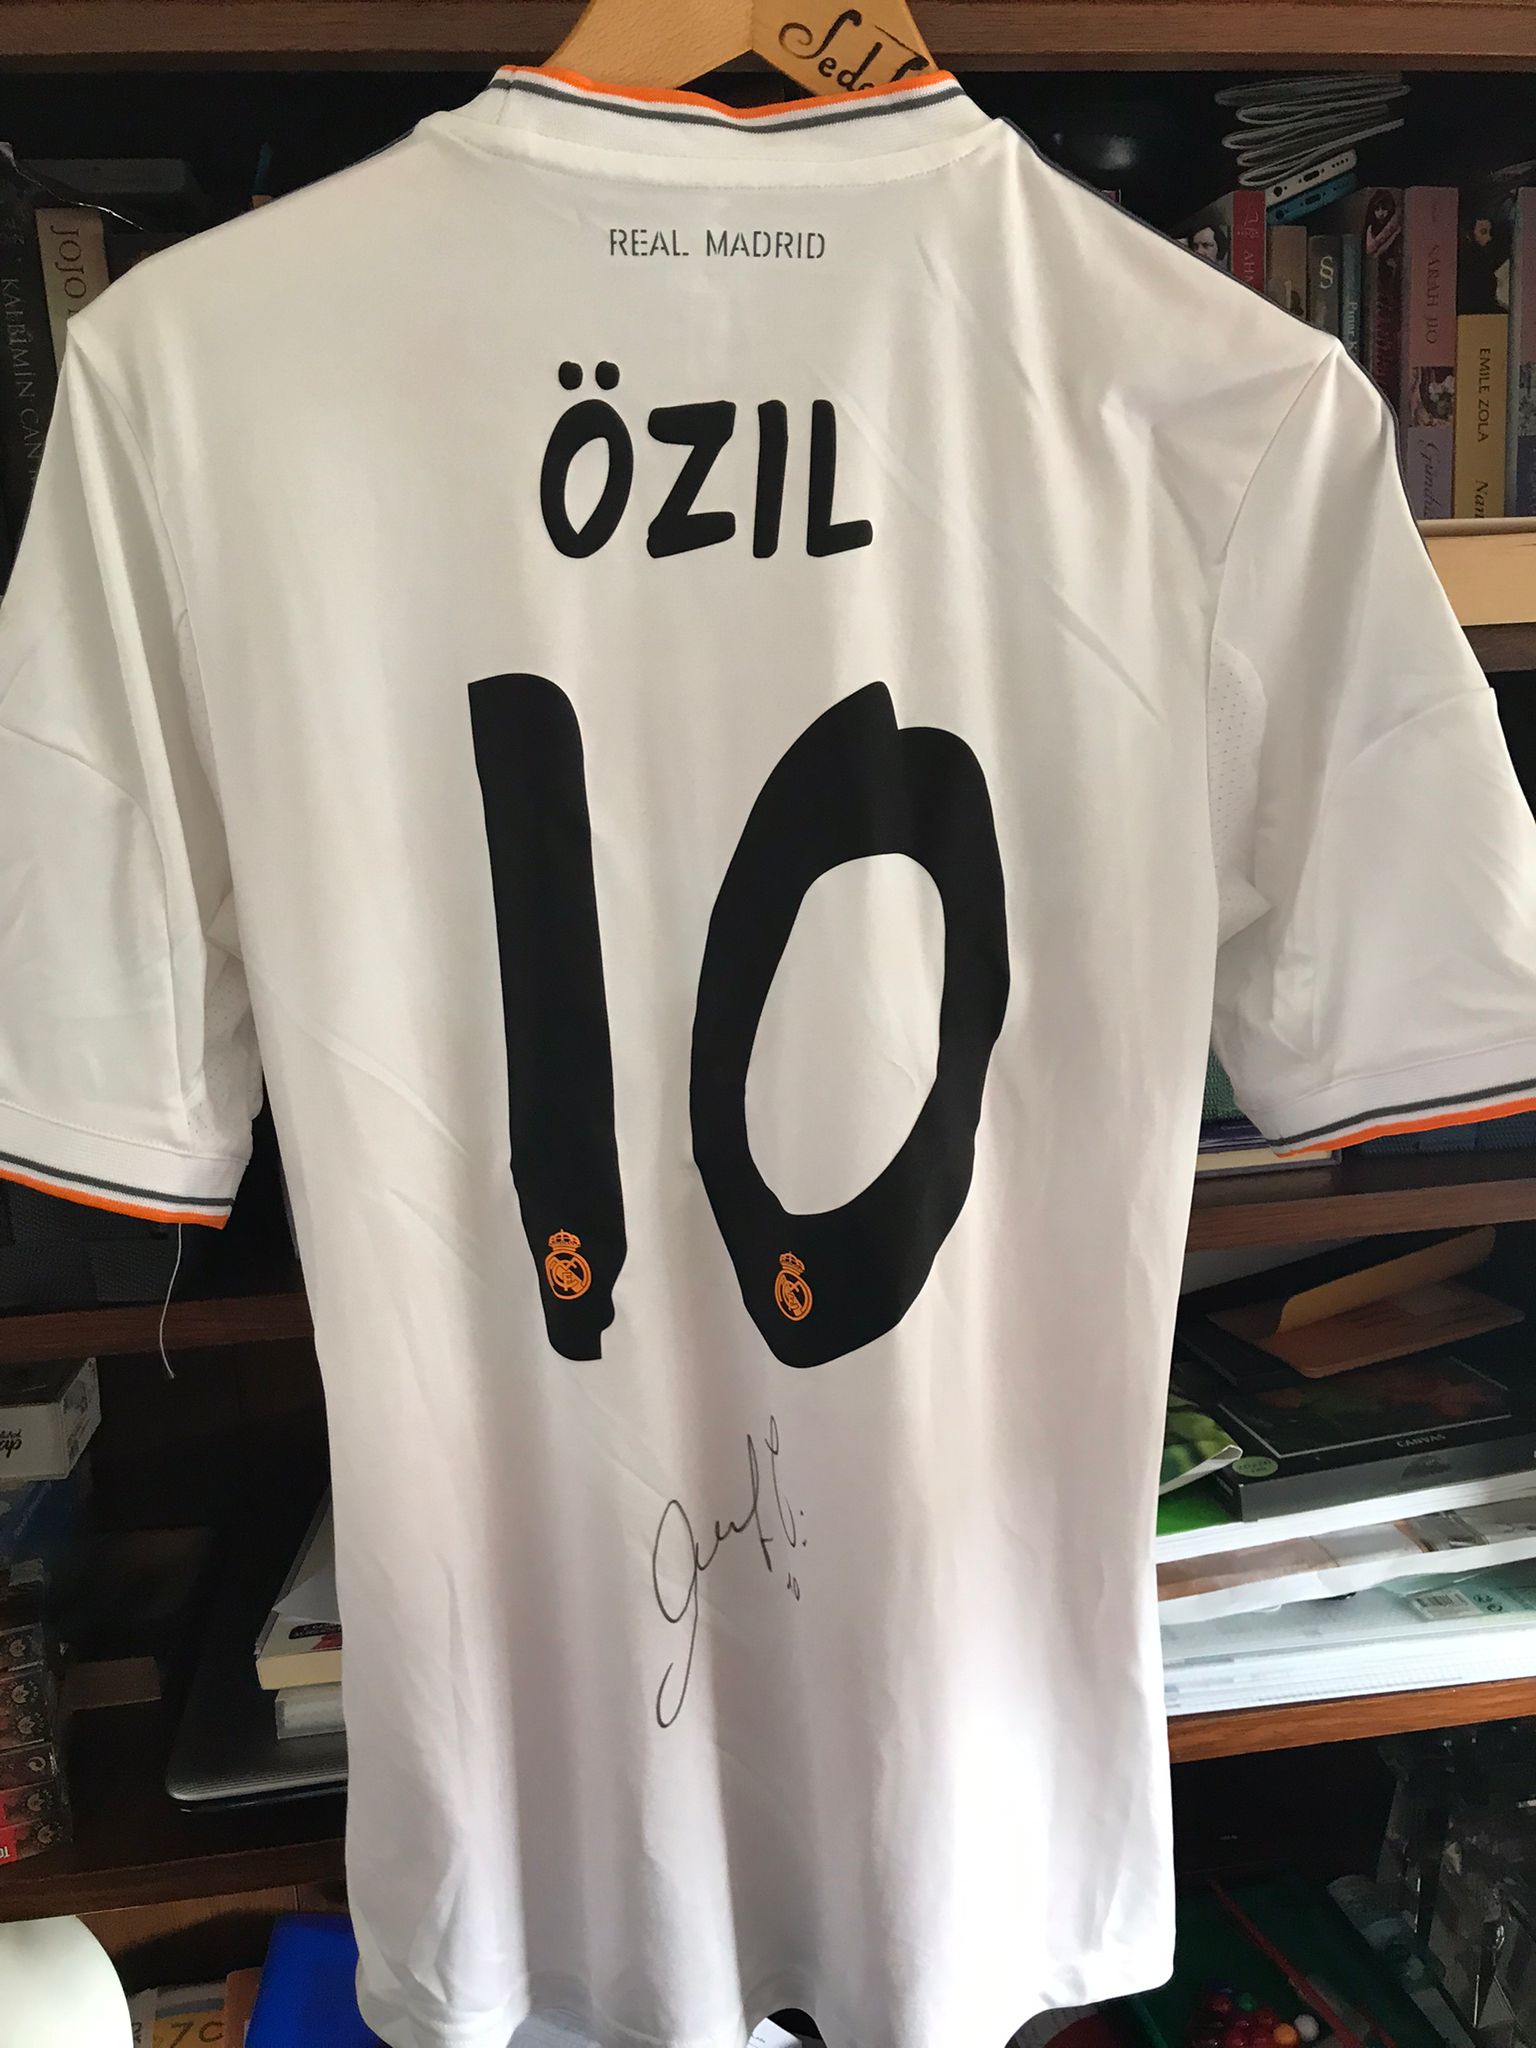 Gedragen en gesigneerd wedstrijdshirt Mesut Özil